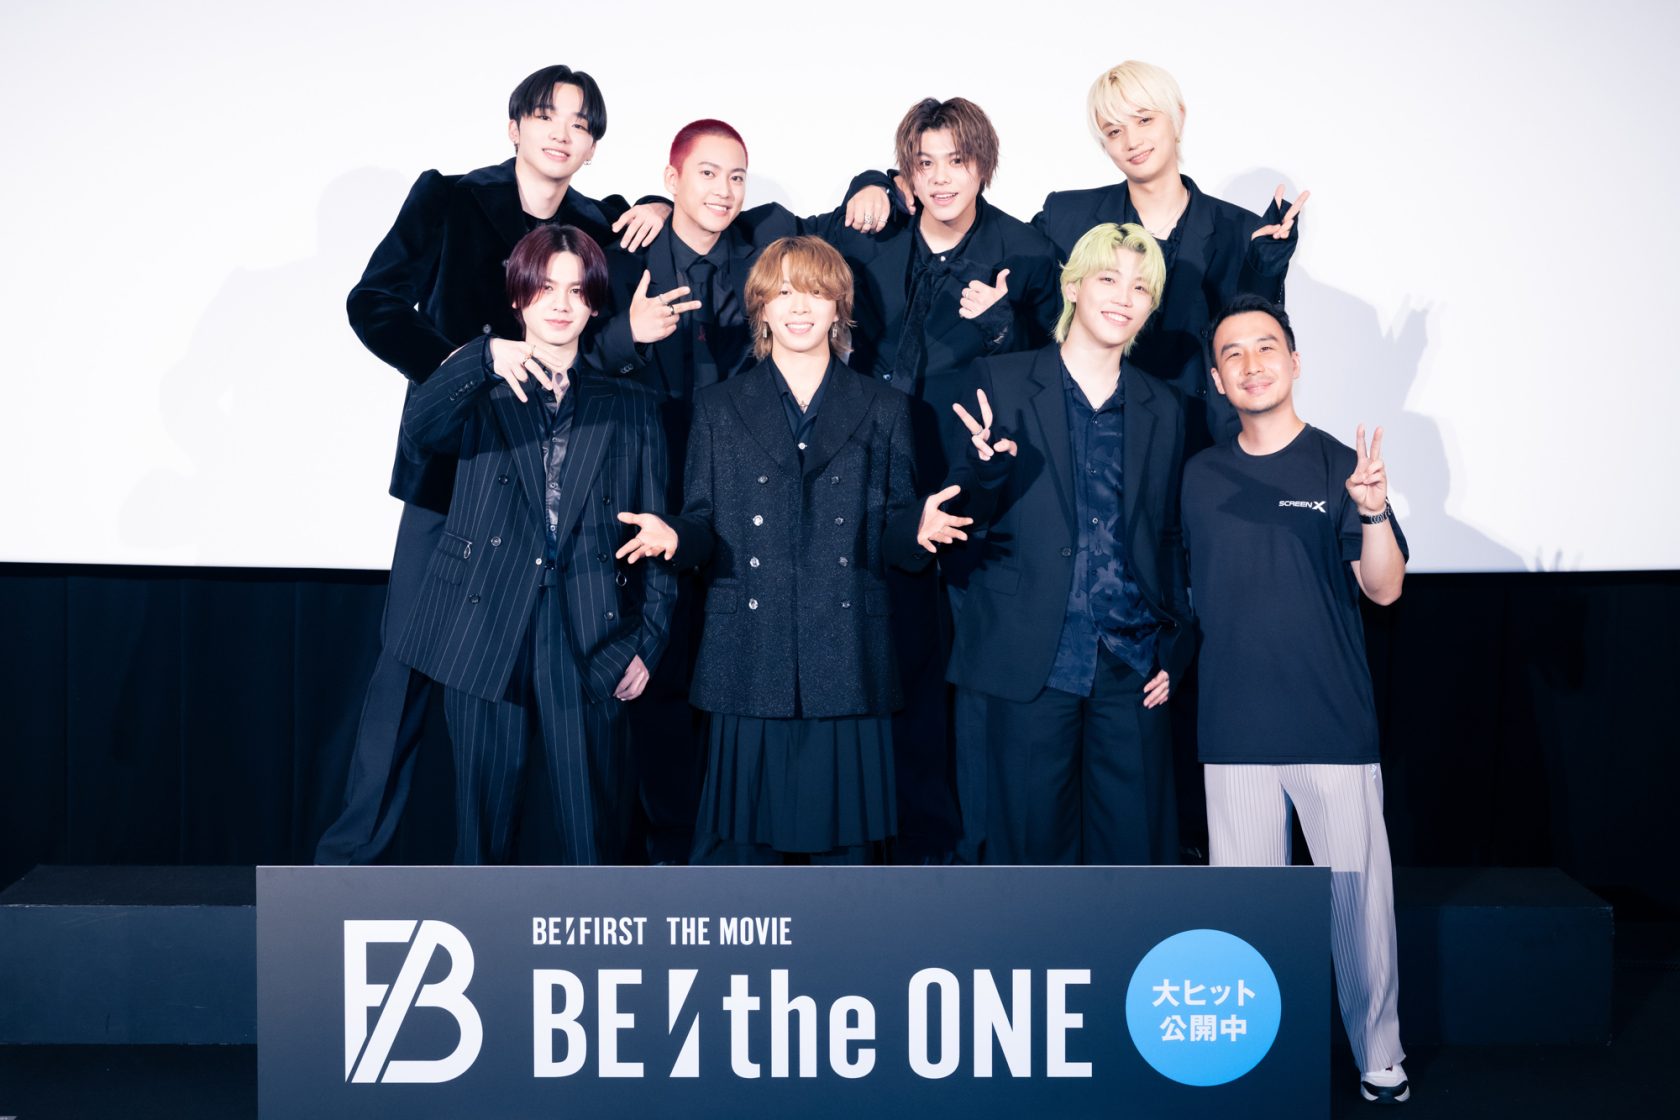 ライブドキュメンタリー映画「BE:the ONE」初日舞台あいさつに登壇した(前列左から)MANATO、SOTA、SHUNTO、オ・ユンドン監督、(後列左から)RYUHEI、RYOKI、LEO、JUNON ⓒ田中聖太郎